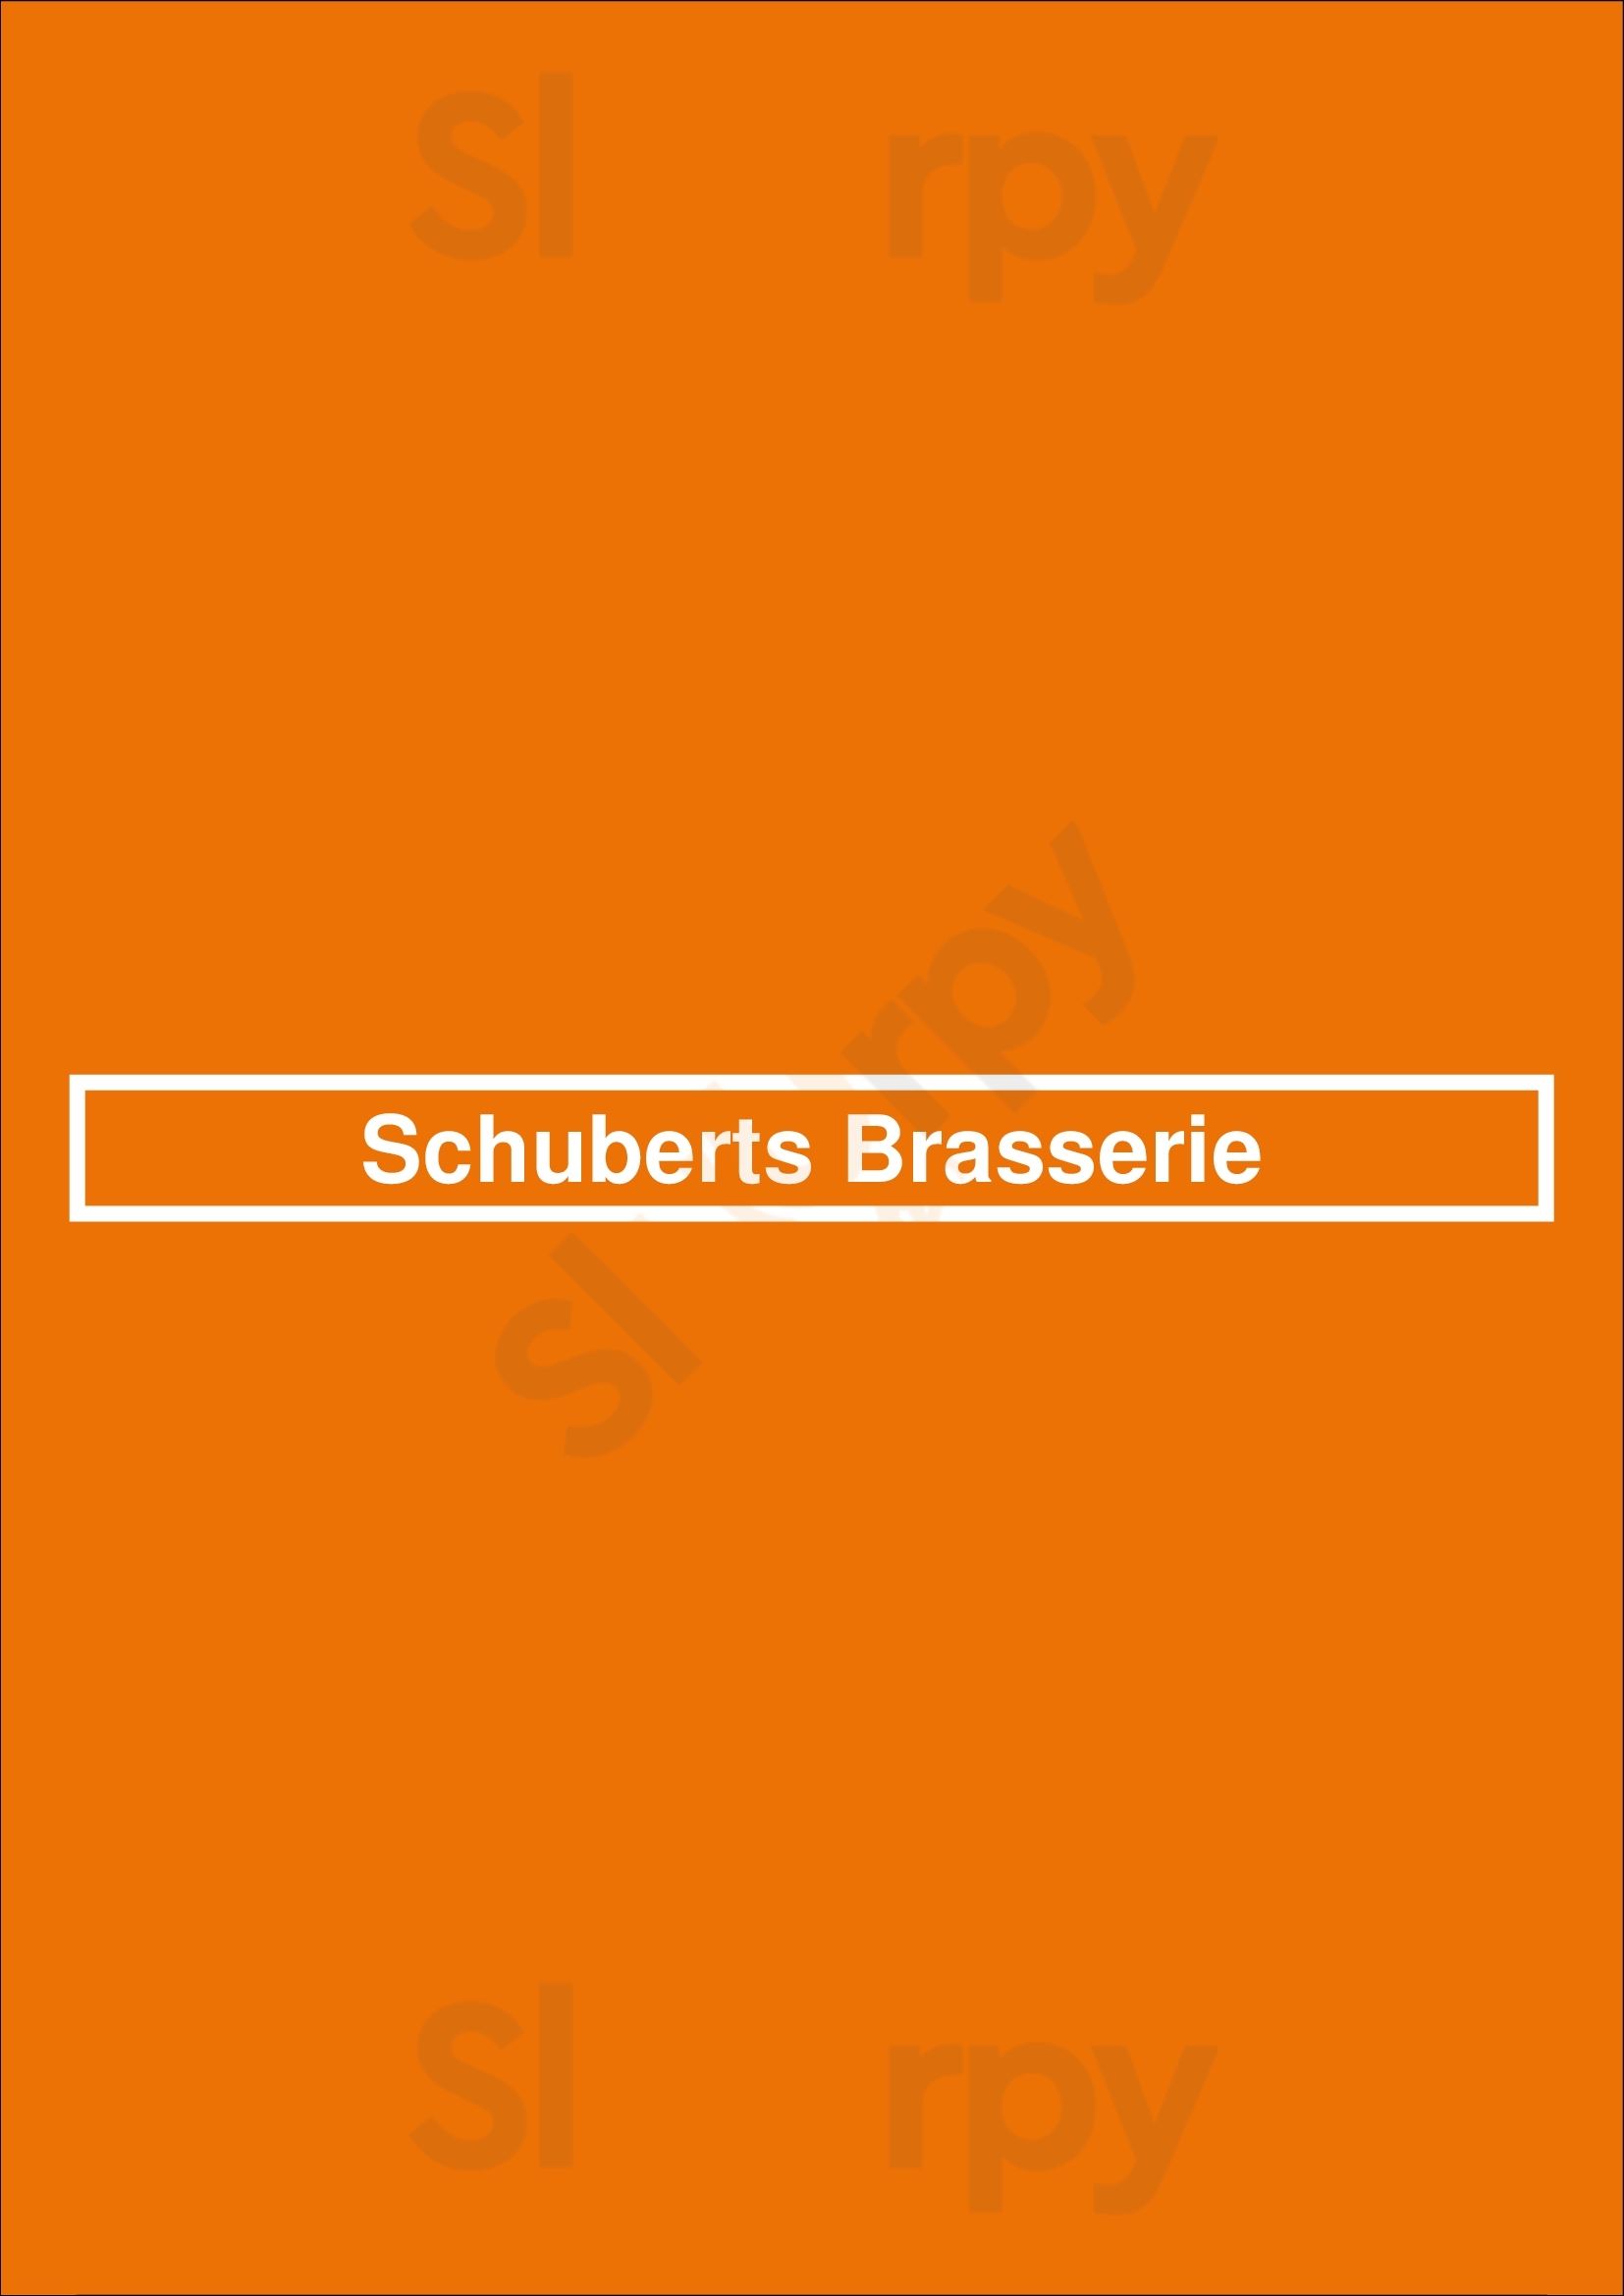 Schuberts Brasserie Hannover Menu - 1